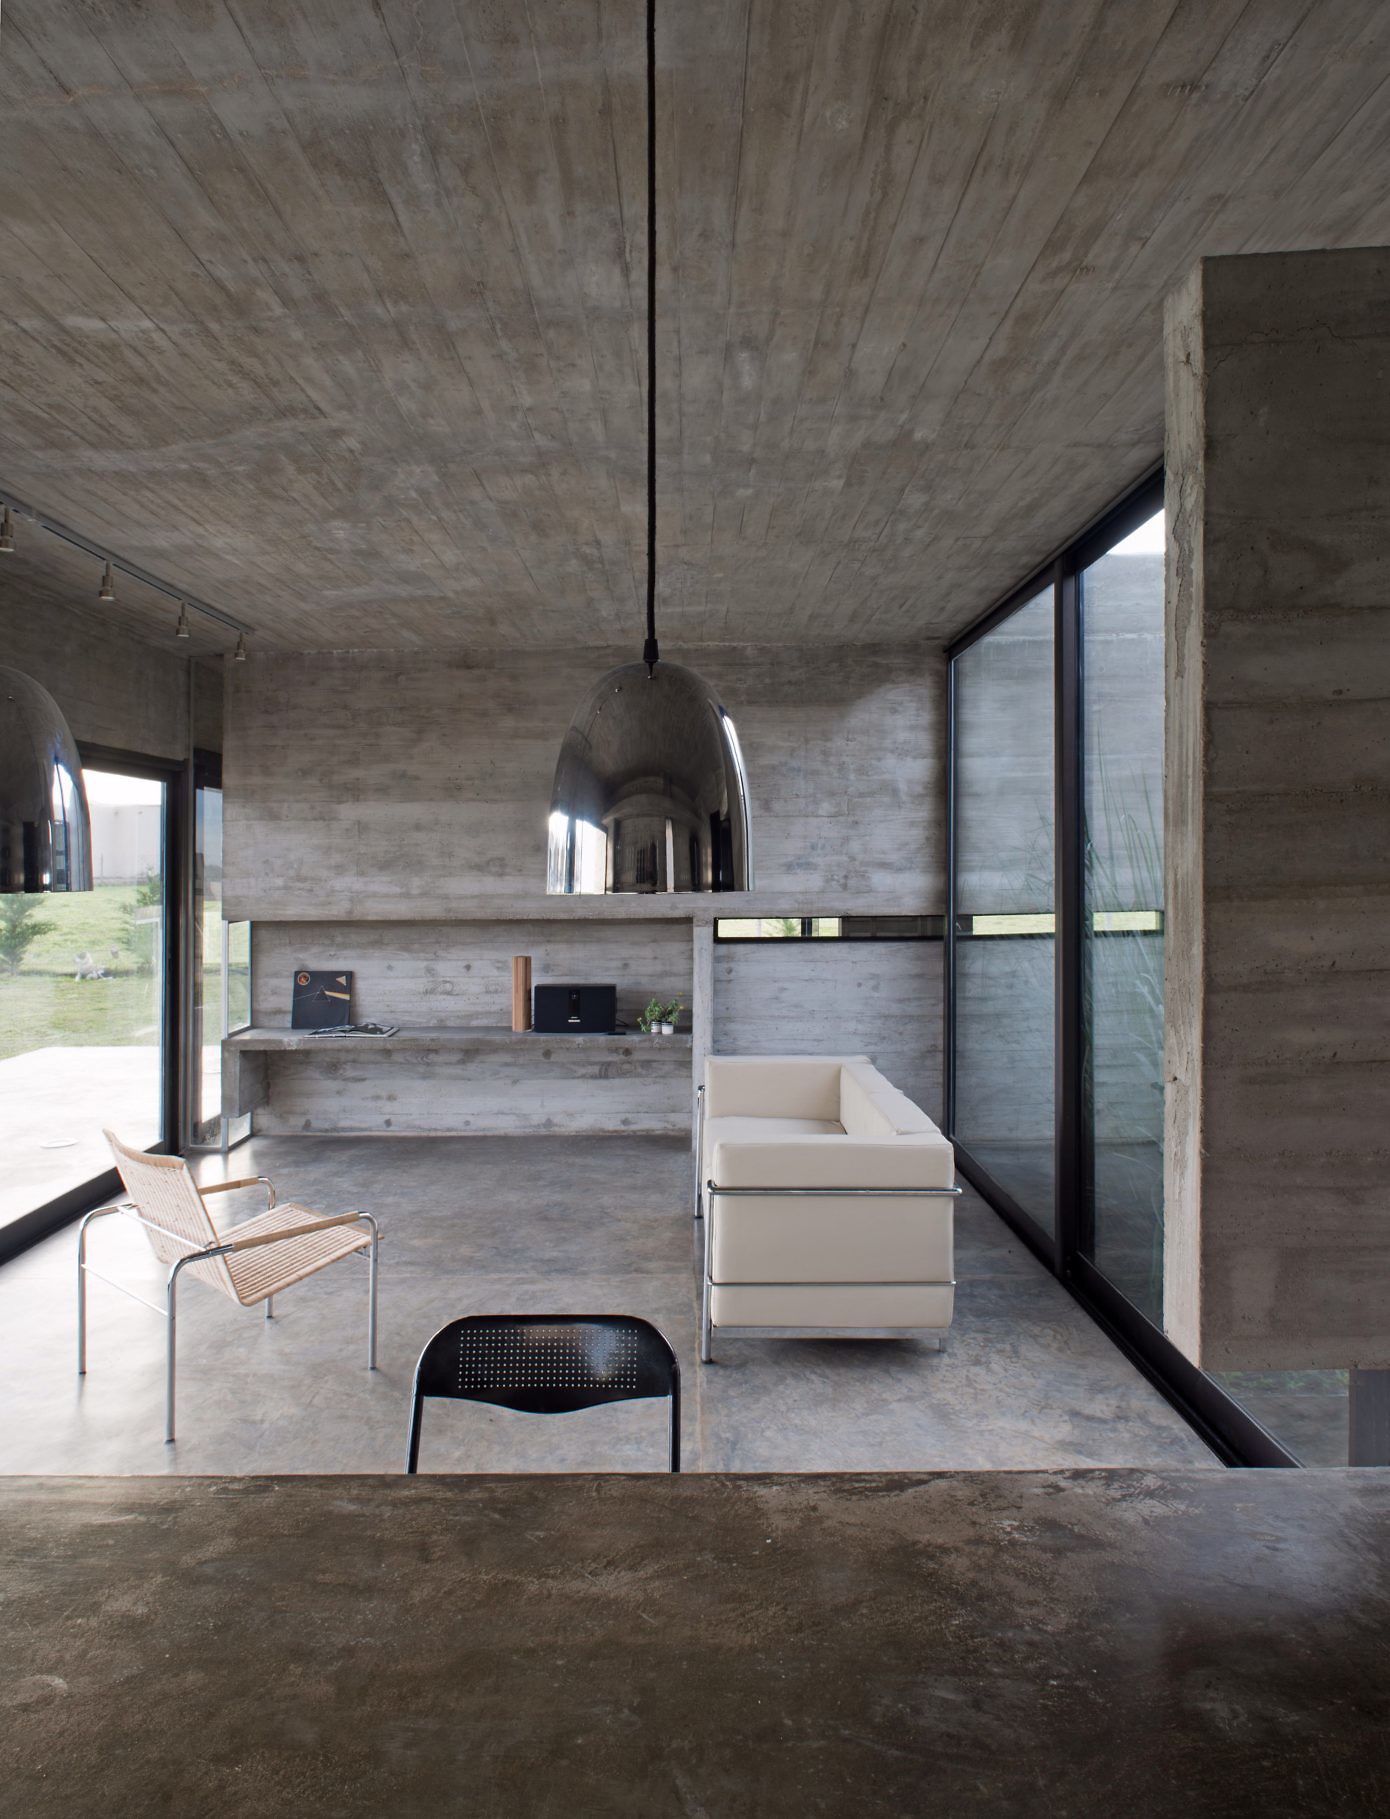 Casa Mach by Luciano Kruk Arquitectos